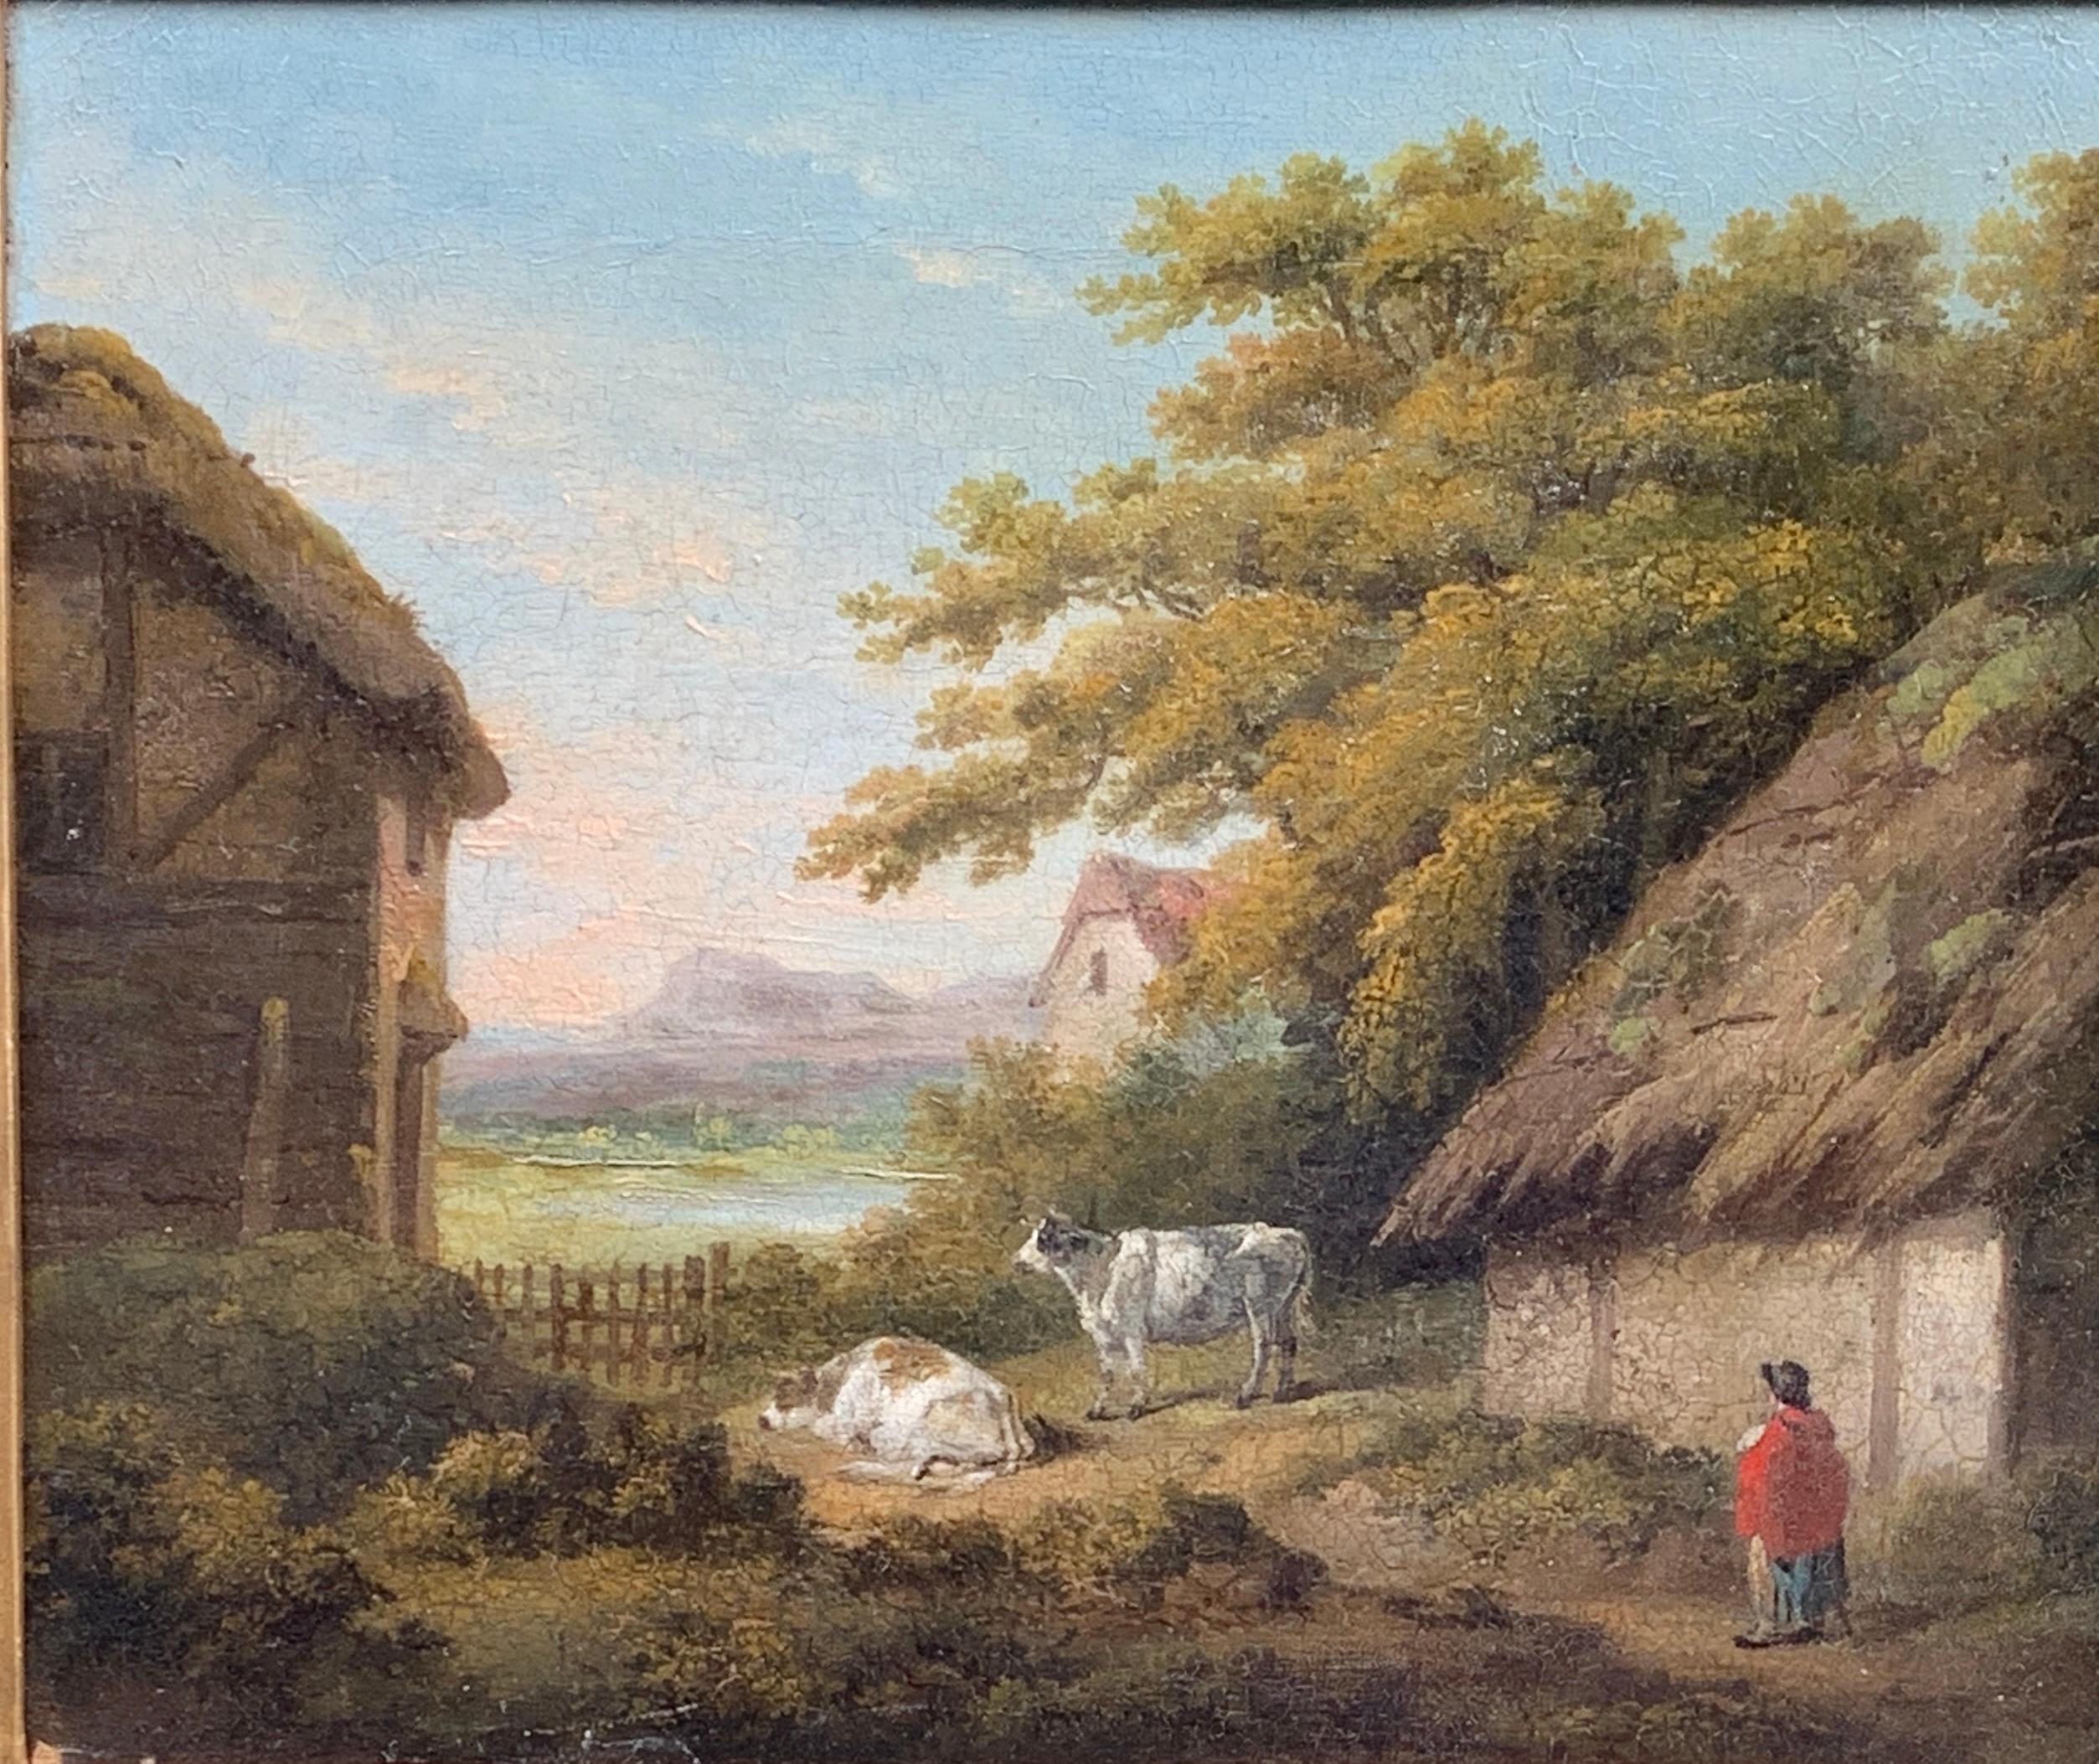 Paysage antique anglais victorien du 19ème siècle avec cottage, personnage et vaches - Painting de George Morland